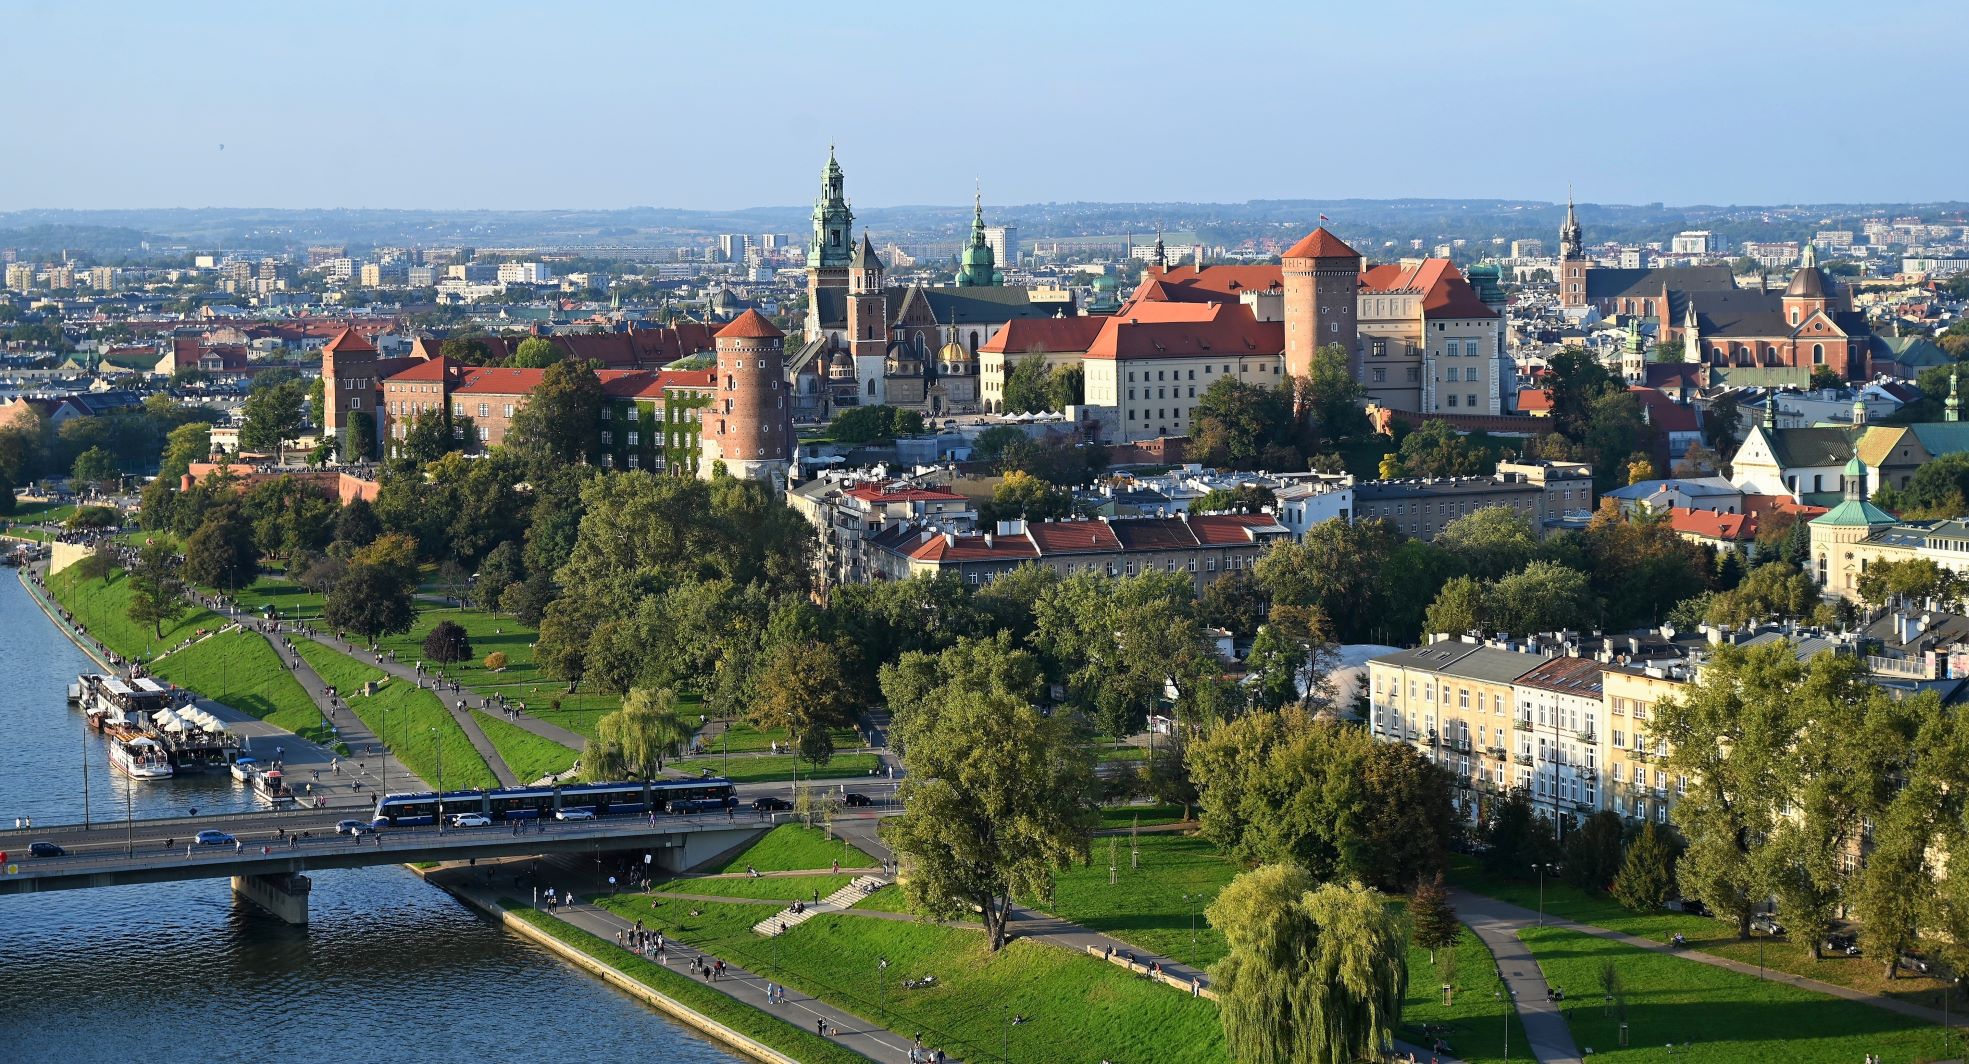 Kulturalny weekend w Krakowie – jest w czym wybierać